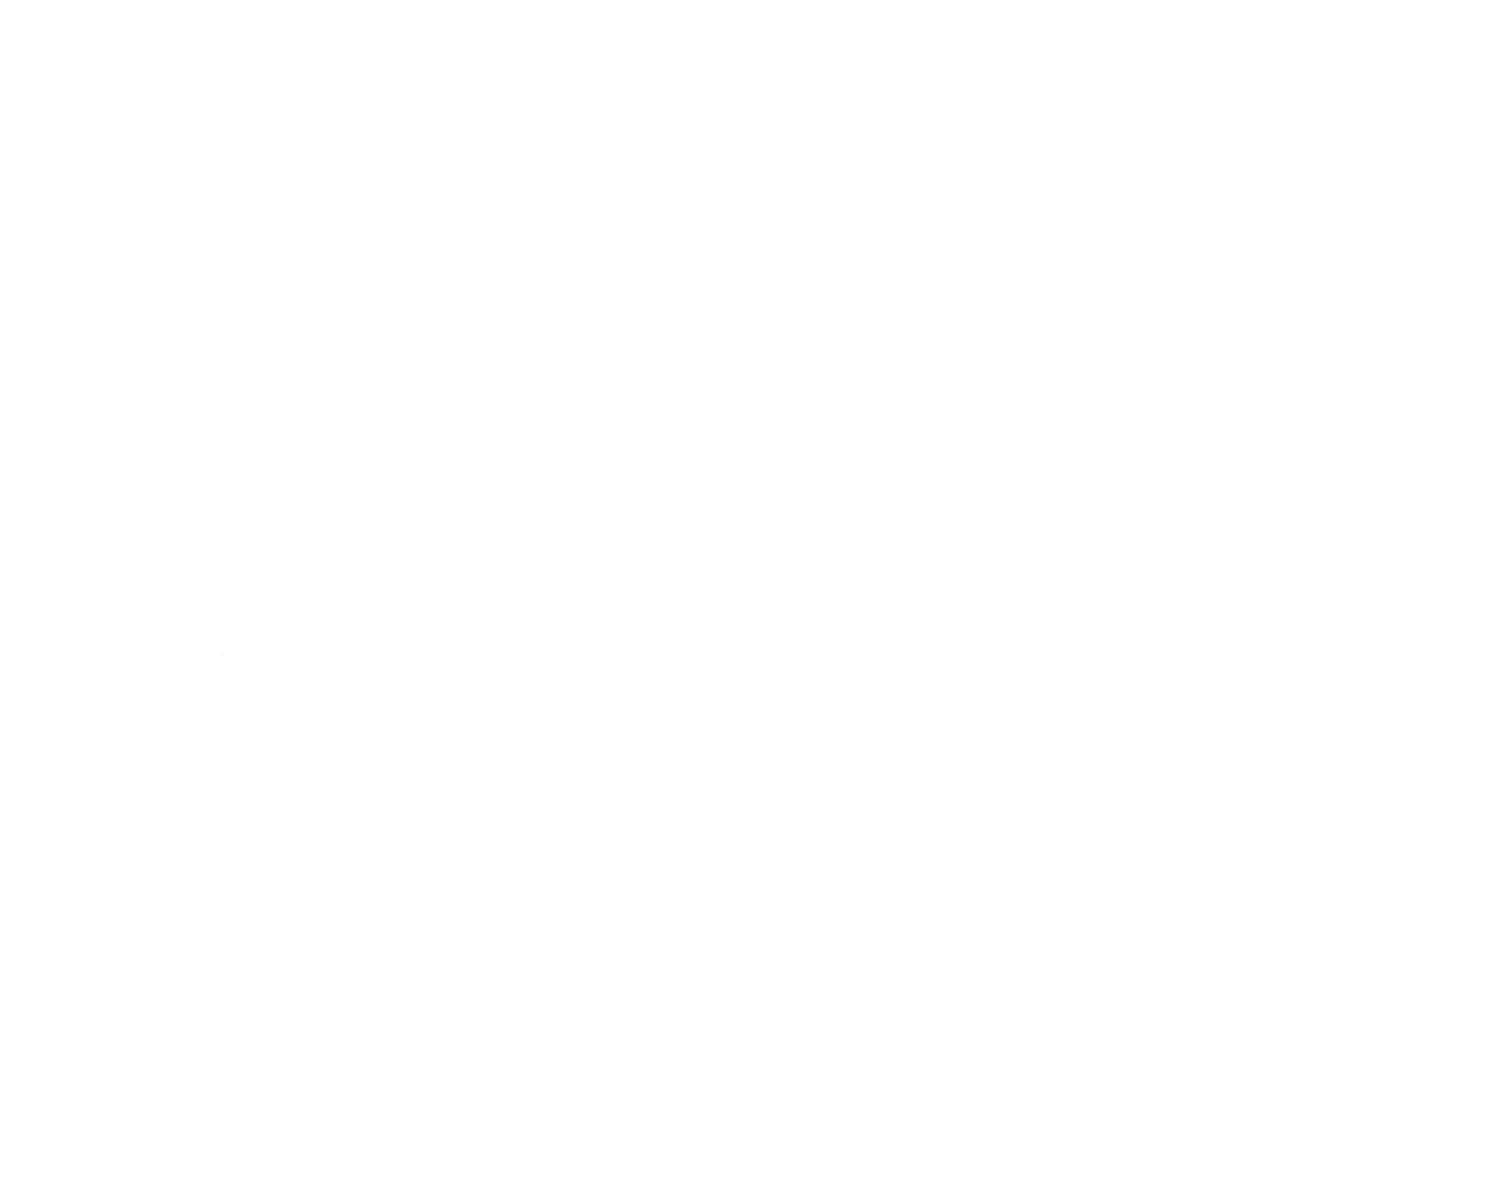 OPL